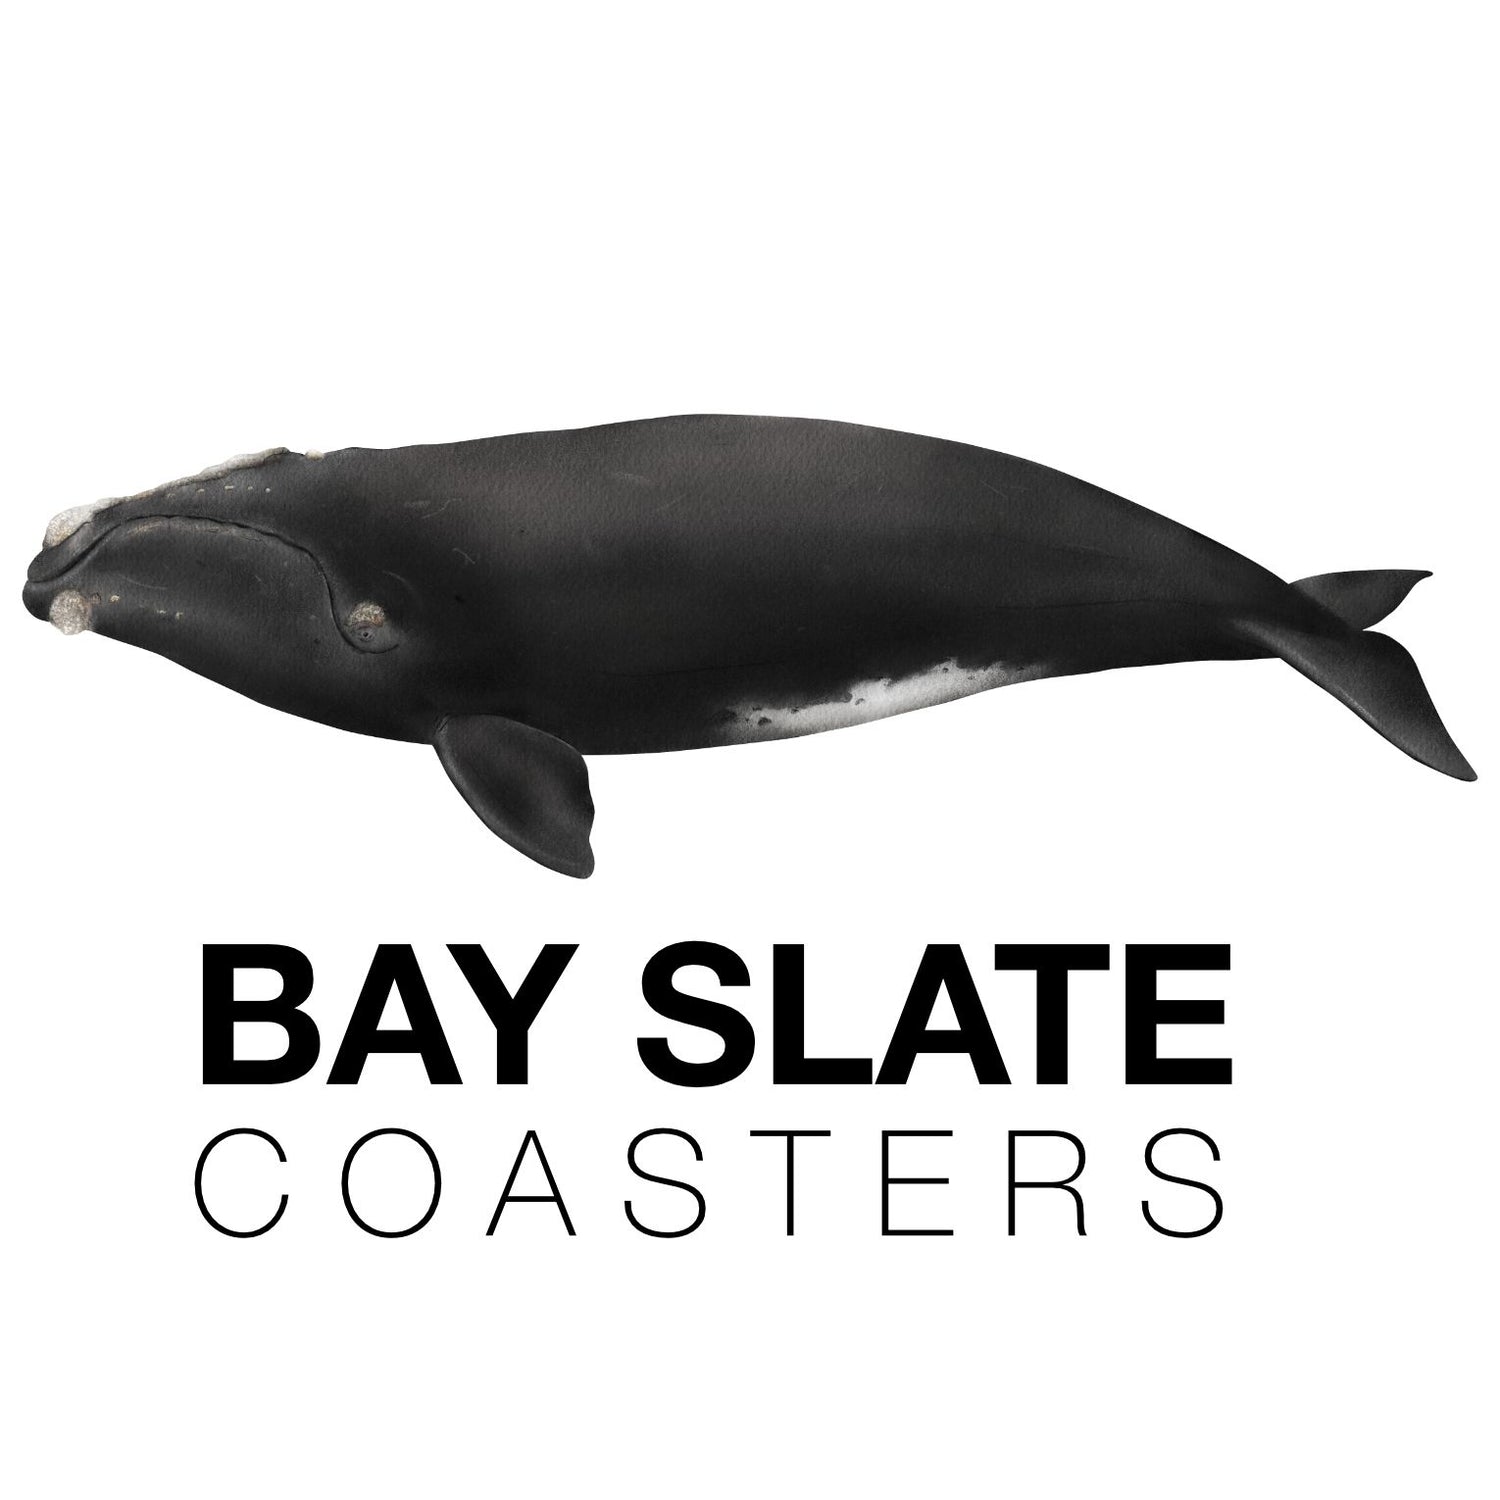 Bay Slate Coasters